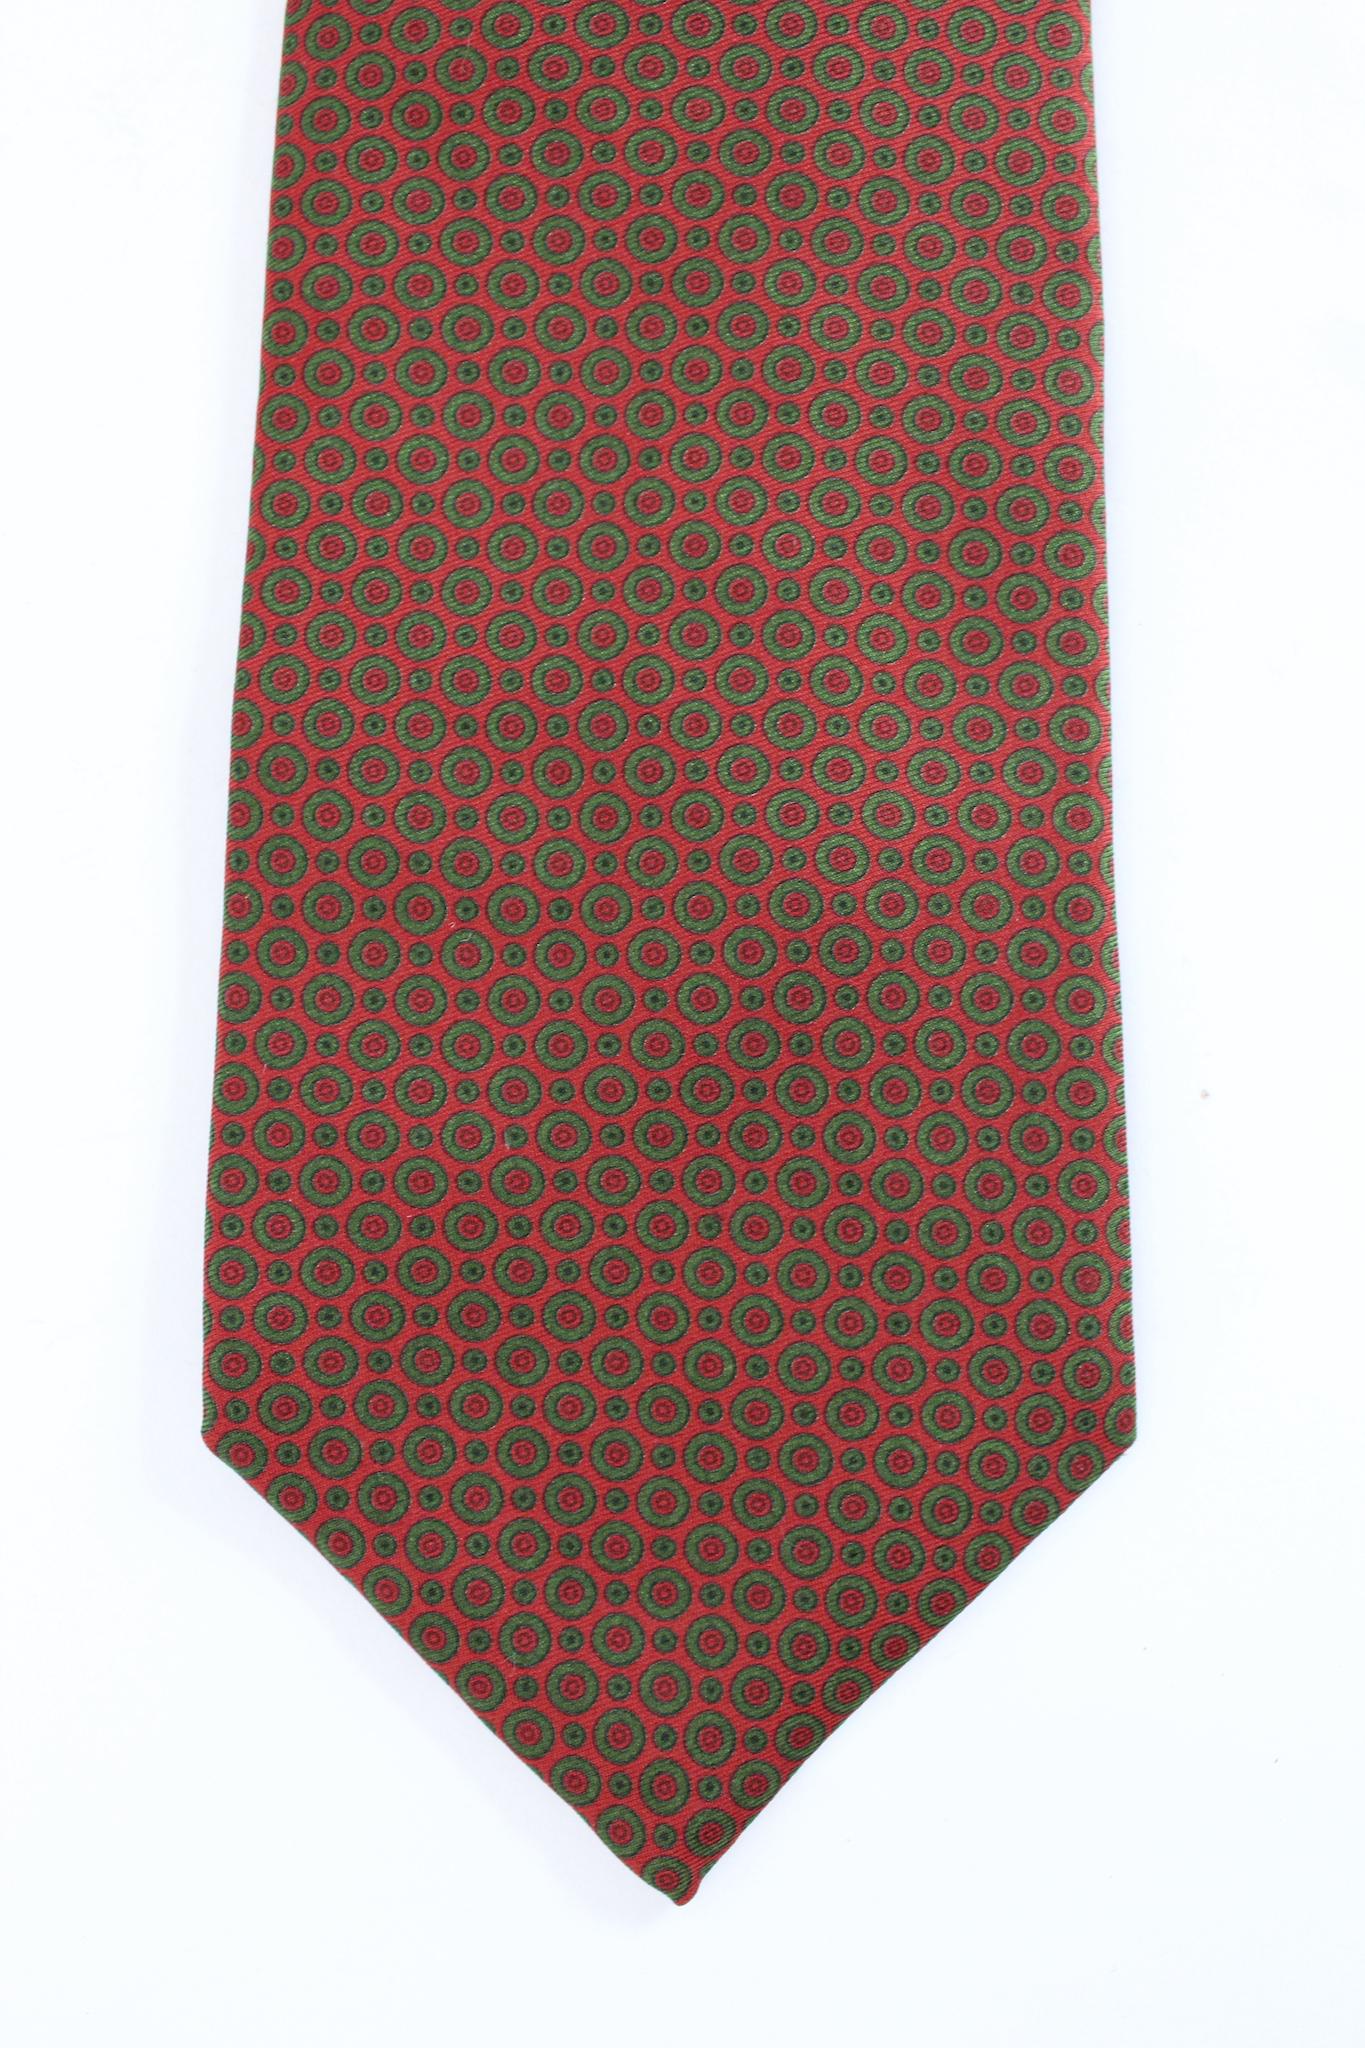 Cravate à pois vintage Etro des années 90. Couleur marron et verte, 100% soie. Fabriquées en Italie.

Longueur : 142 cm
Largeur : 9 cm